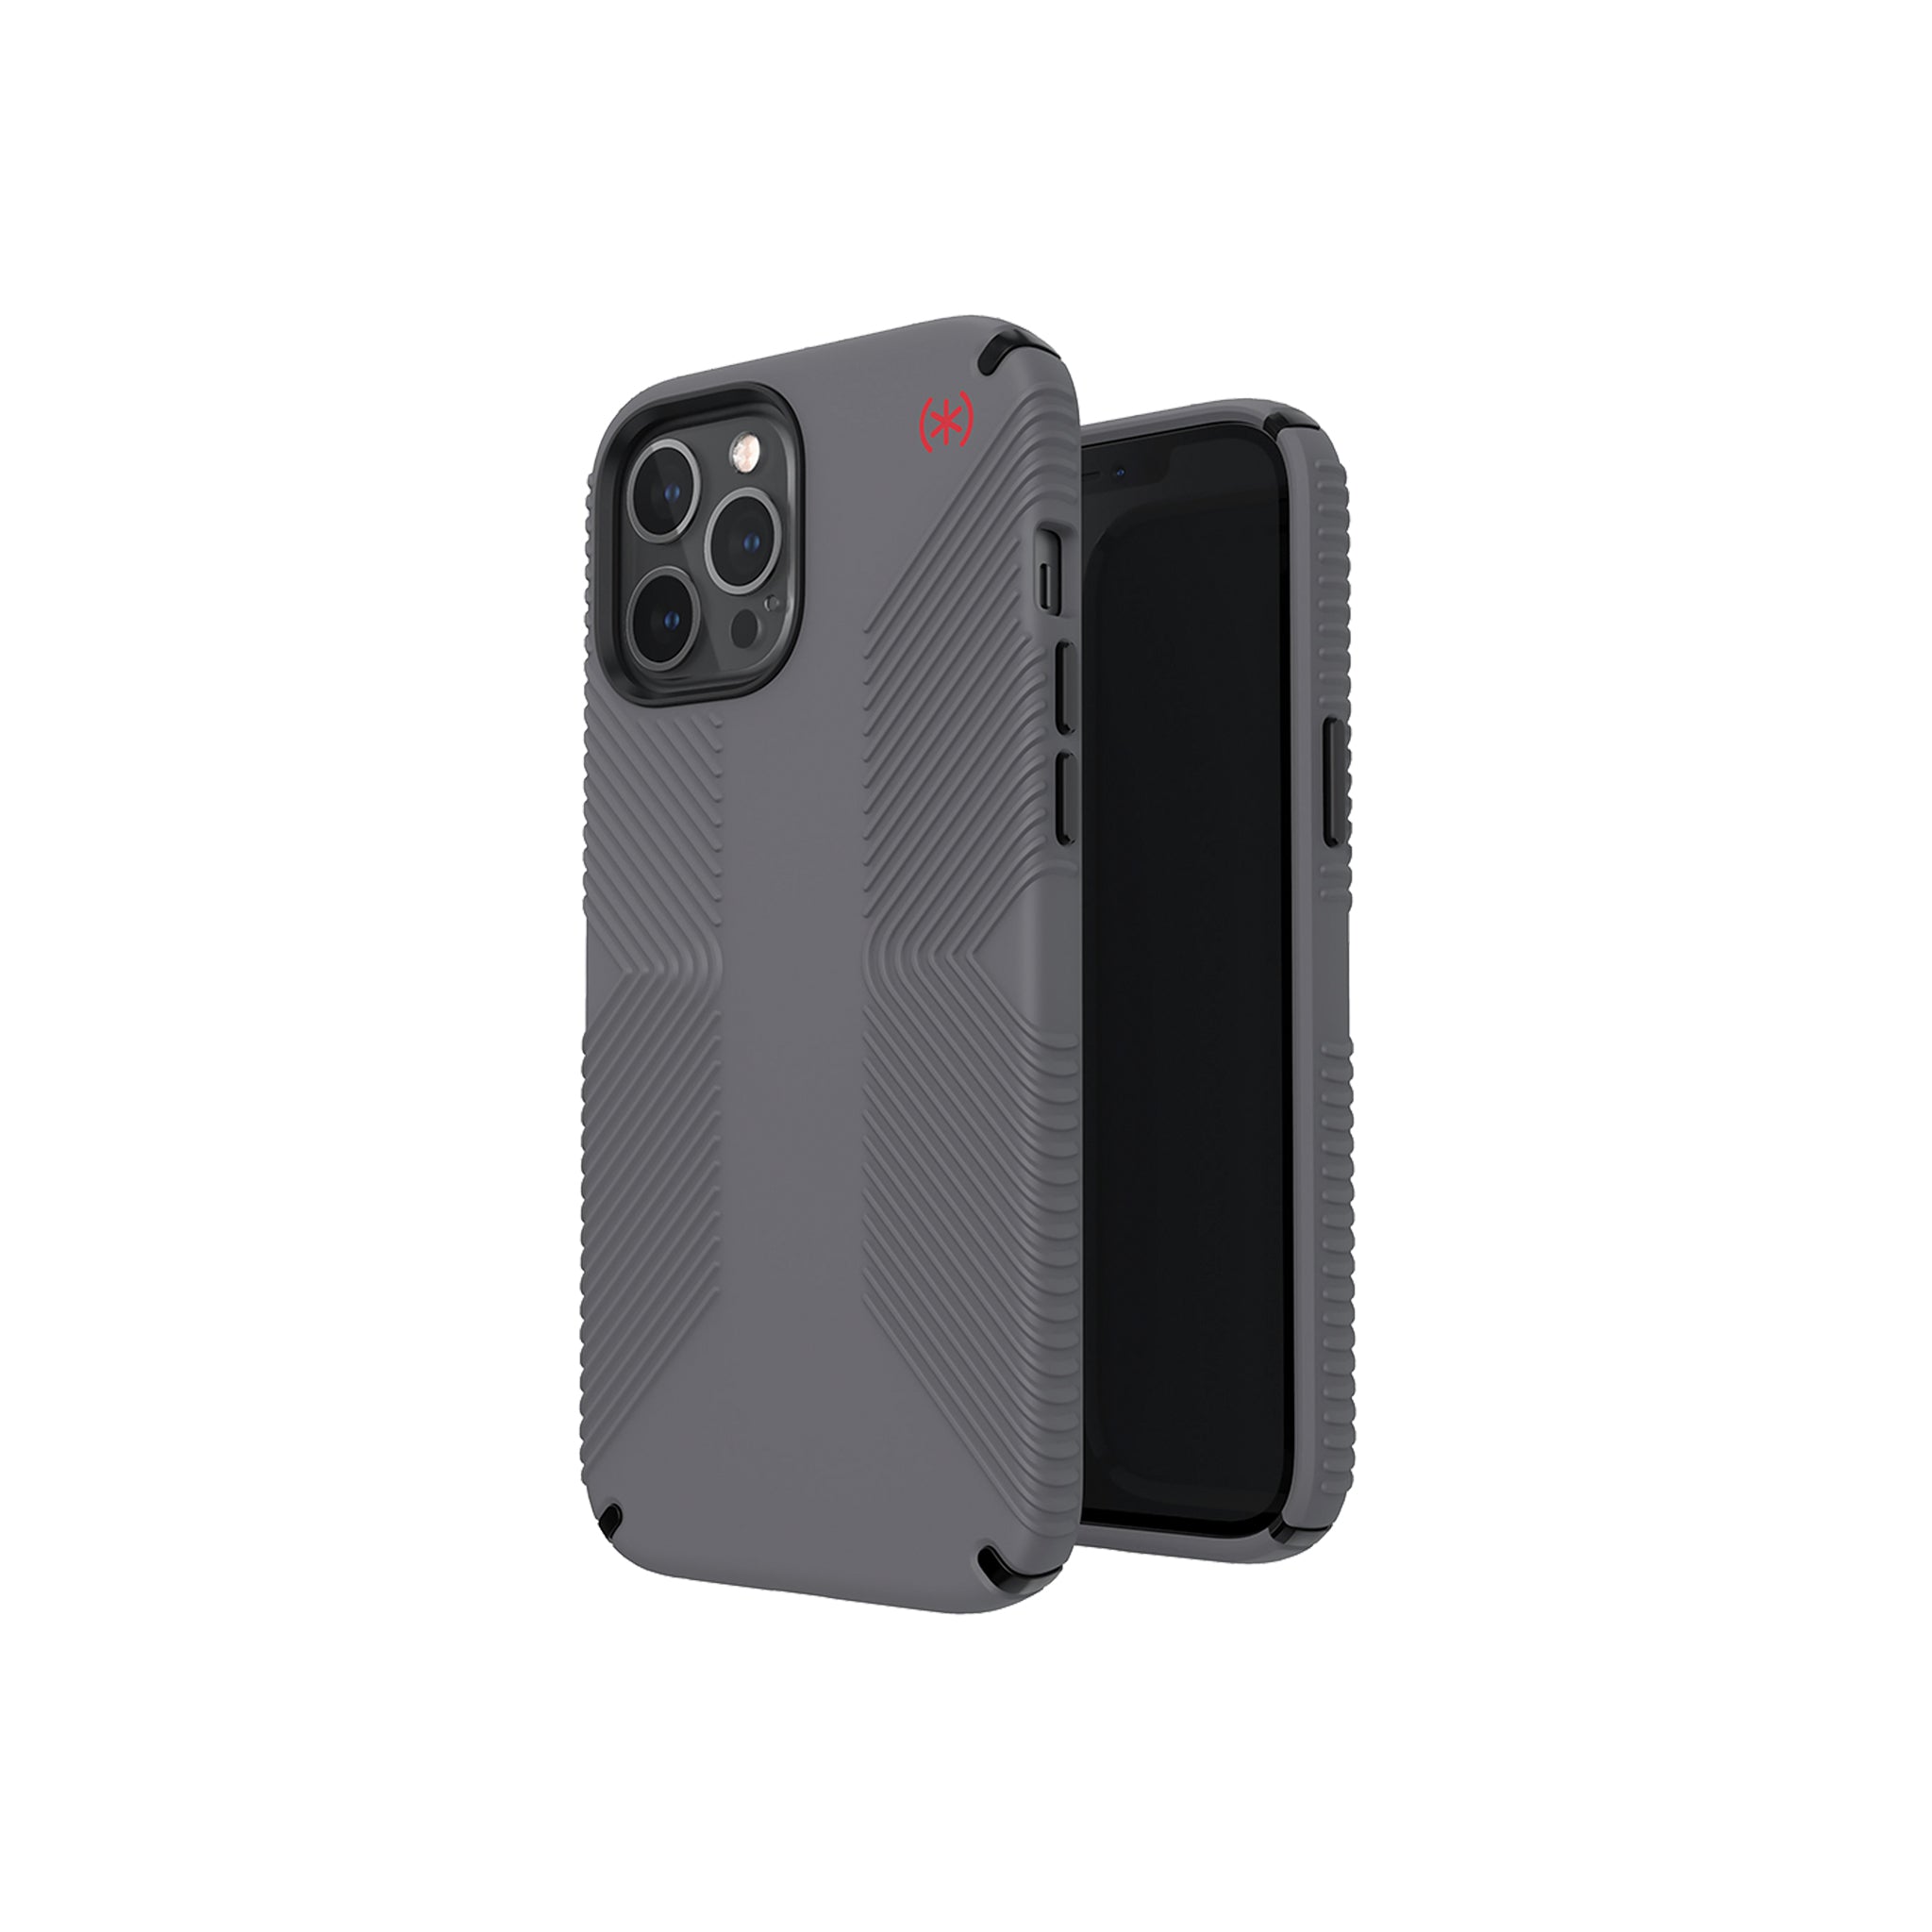 Speck - Presidio2 Grip Case For Apple Iphone 12 Pro Max - Graphite Grey